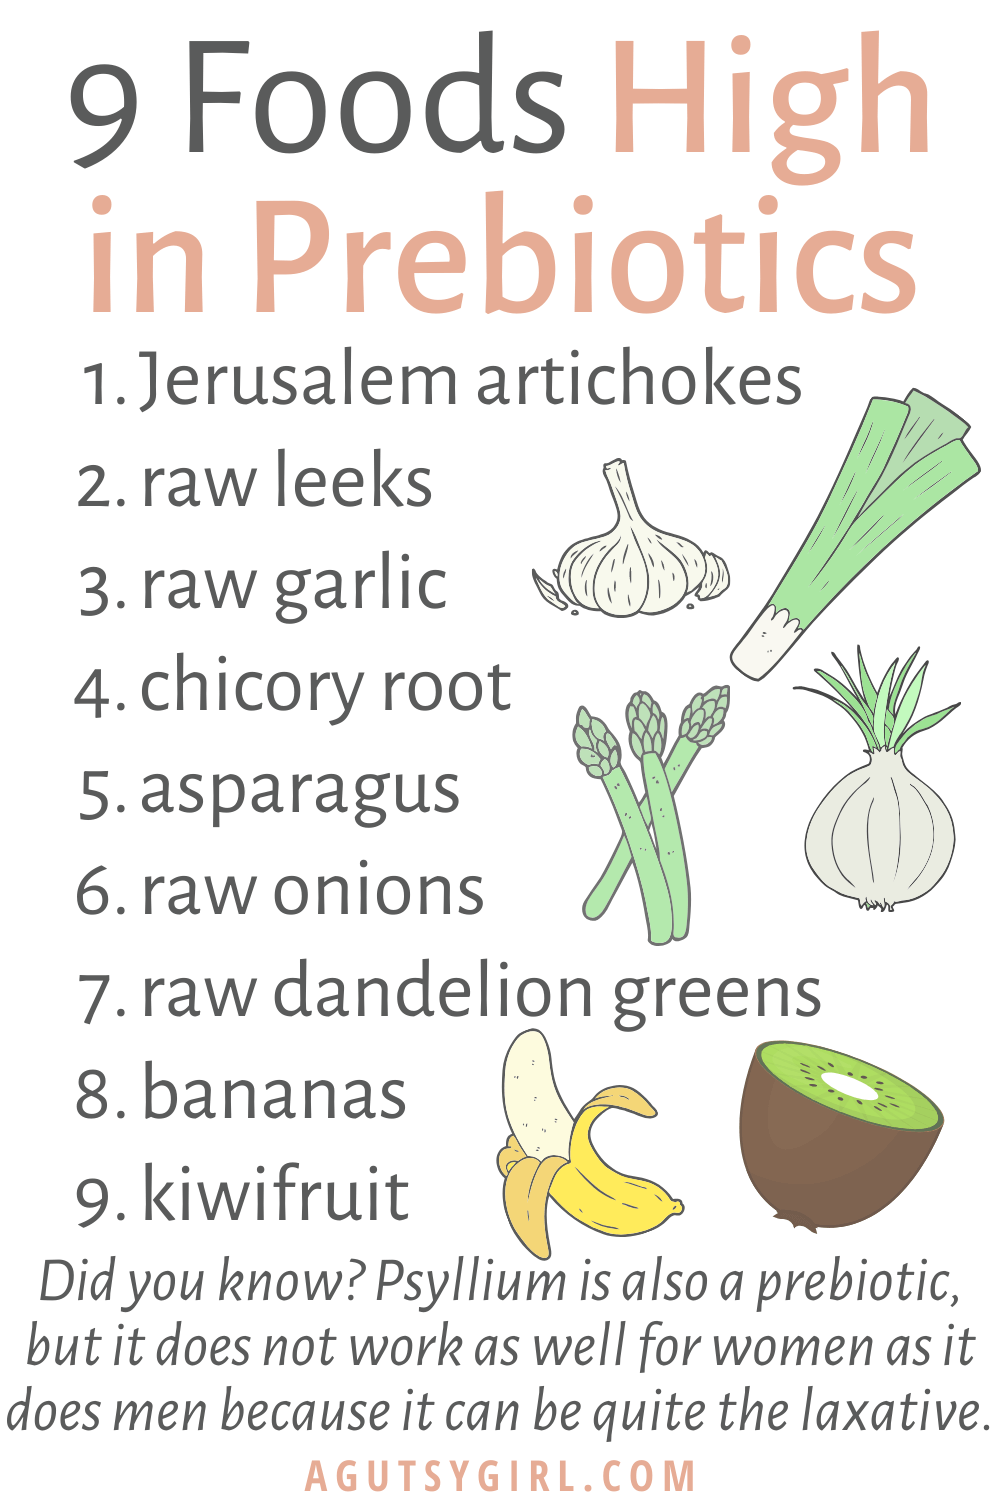 All About Prebiotics agutsygirl.com #prebiotic #prebiotics #guthealth #healthyliving 9 foods high in prebiotics